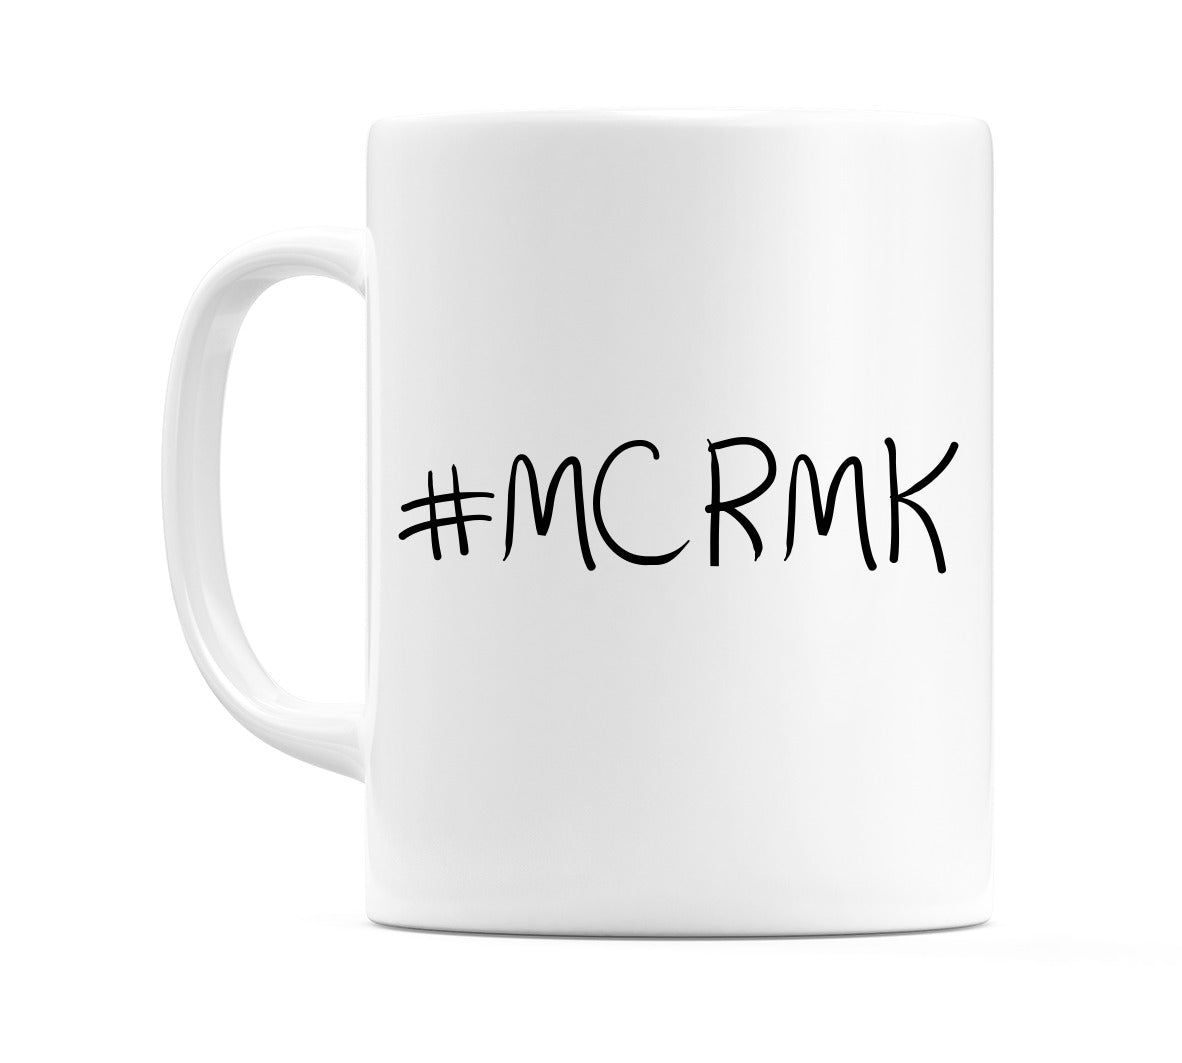 #MCRMK Mug